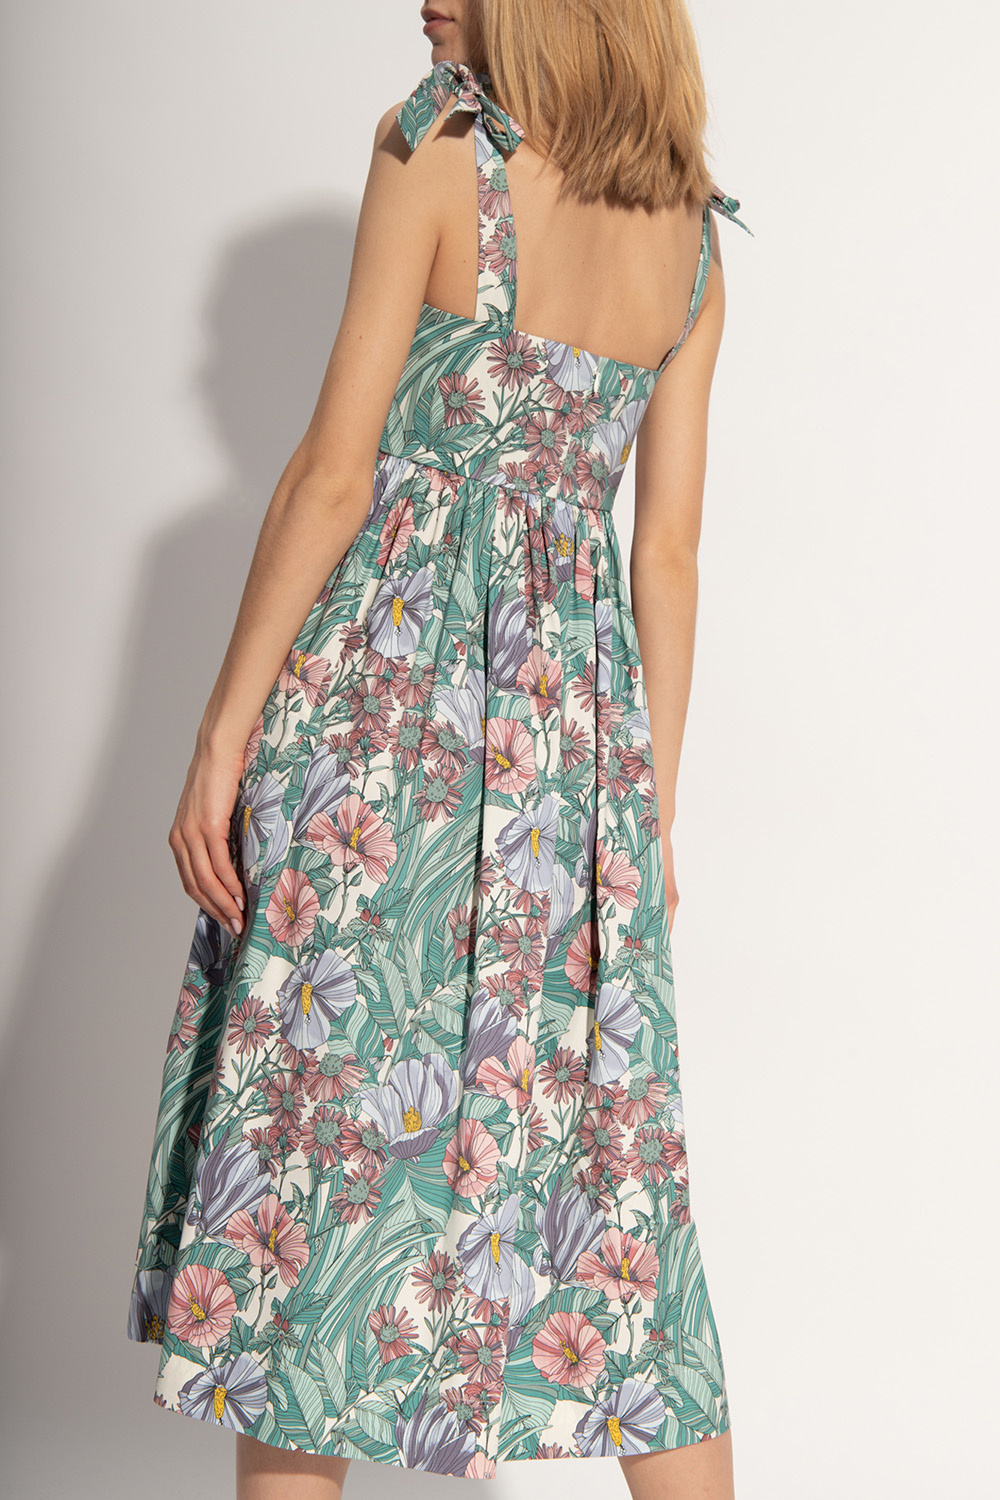 Tory Burch Floral print dress | Women's Clothing | Vitkac